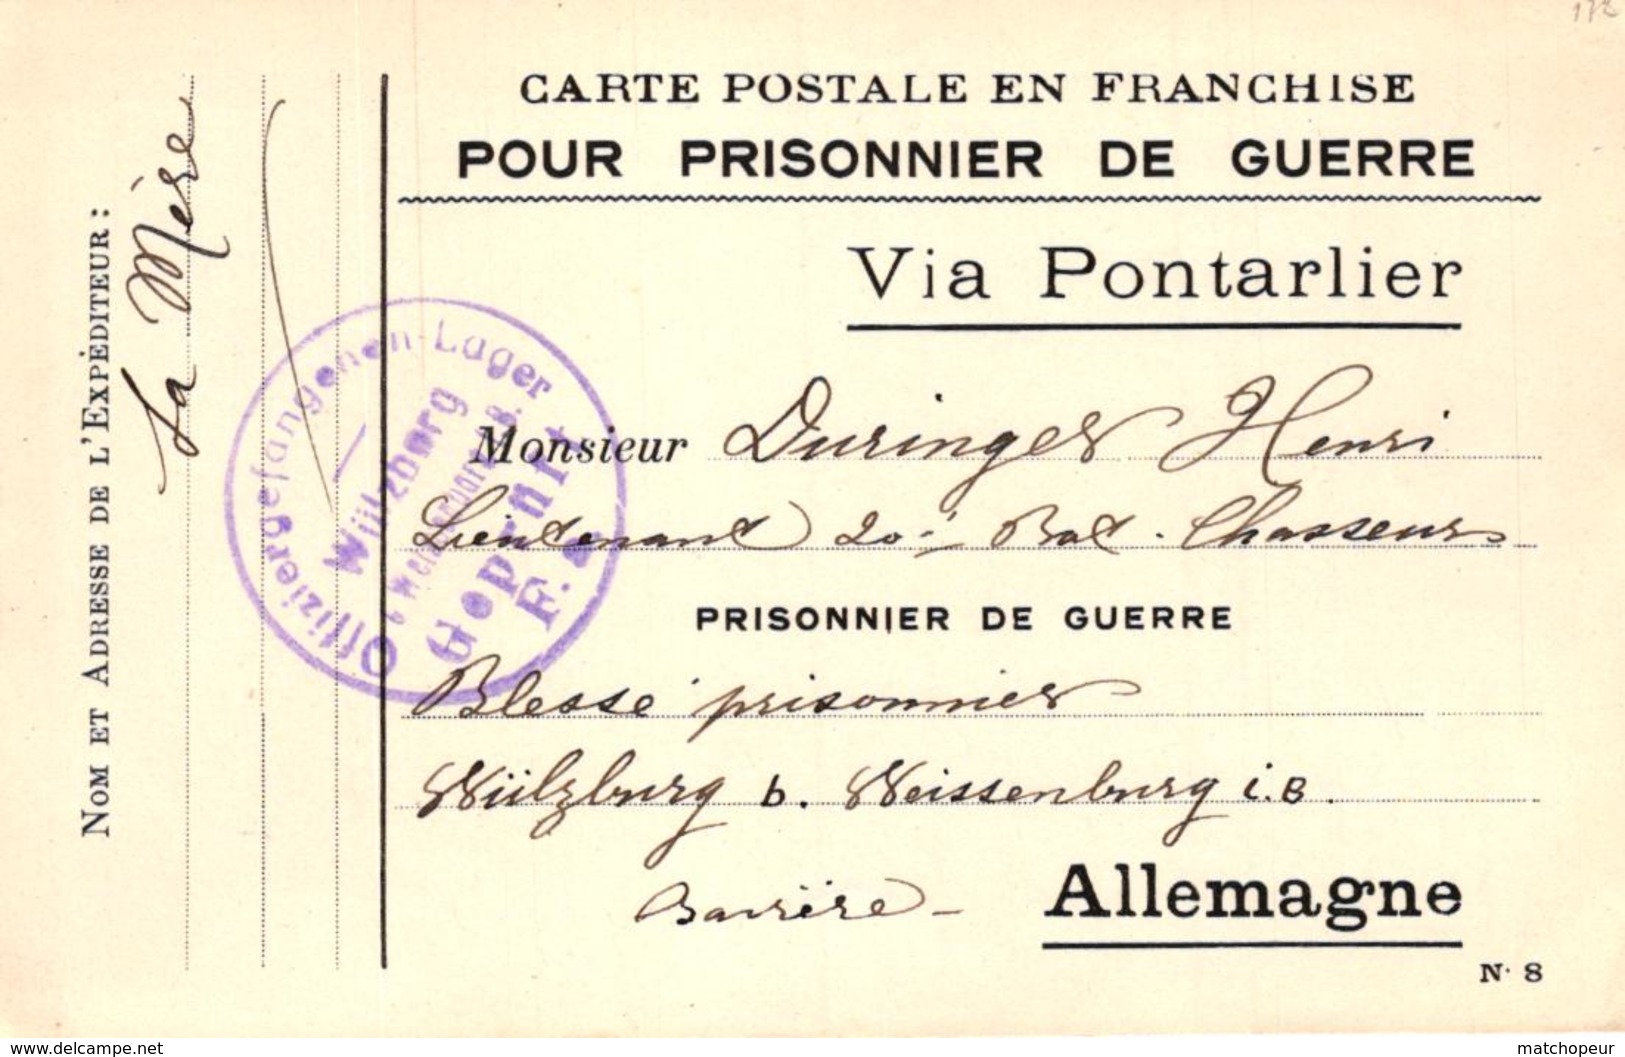 CARTE POSTALE EN FRANCHISE POUR PRISONNIER DE GUERRE - VIA PONTARLIER - Guerre 1914-18